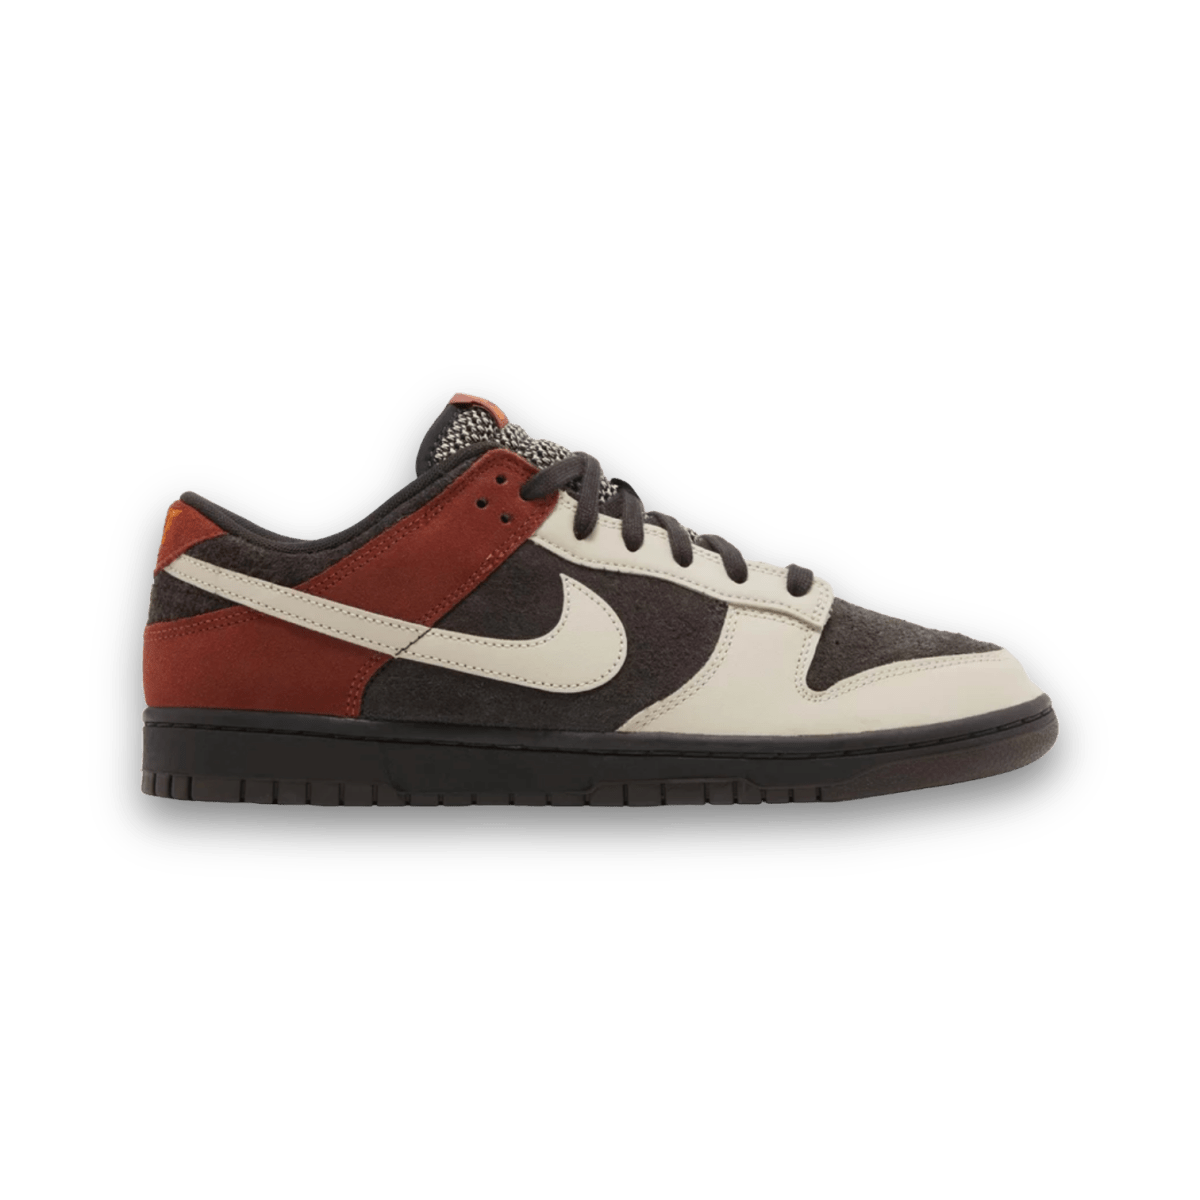 Dunk Low 'Red Panda' - Low Sneaker - Jawns on Fire Sneakers & Streetwear